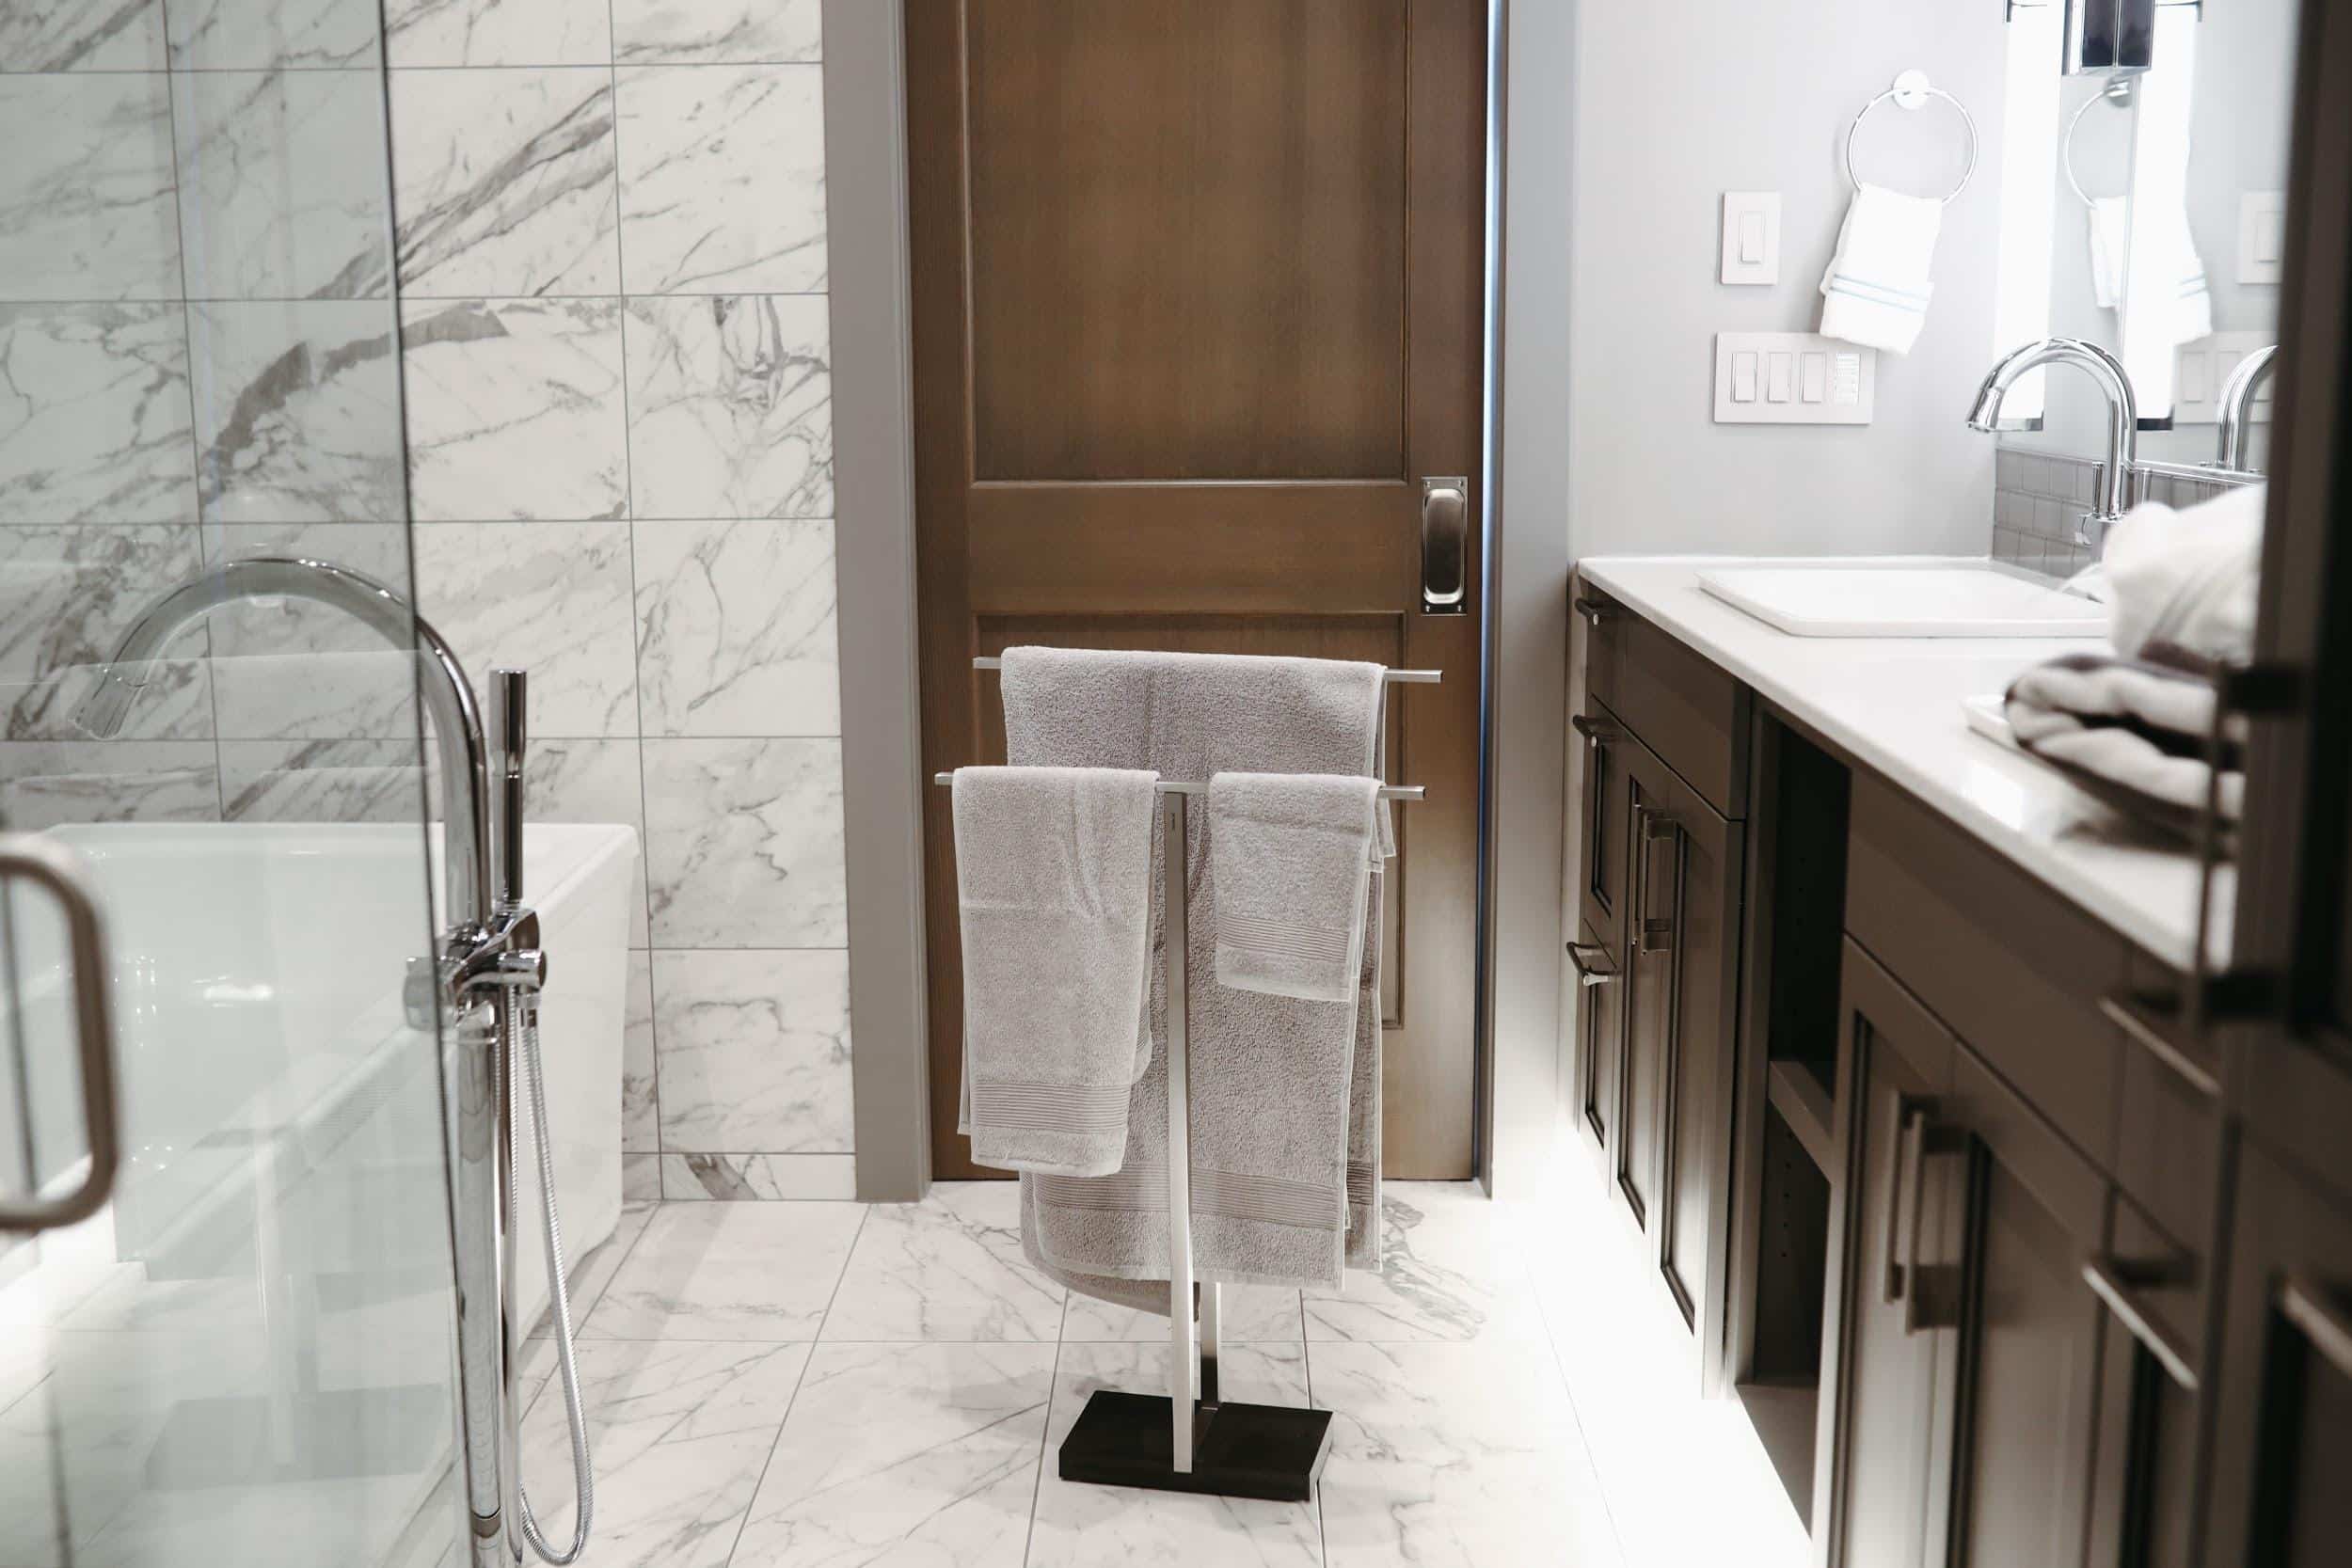 Łazienka to nie tylko armatura – zobacz najmodniejsze szafki do łazienki! 1